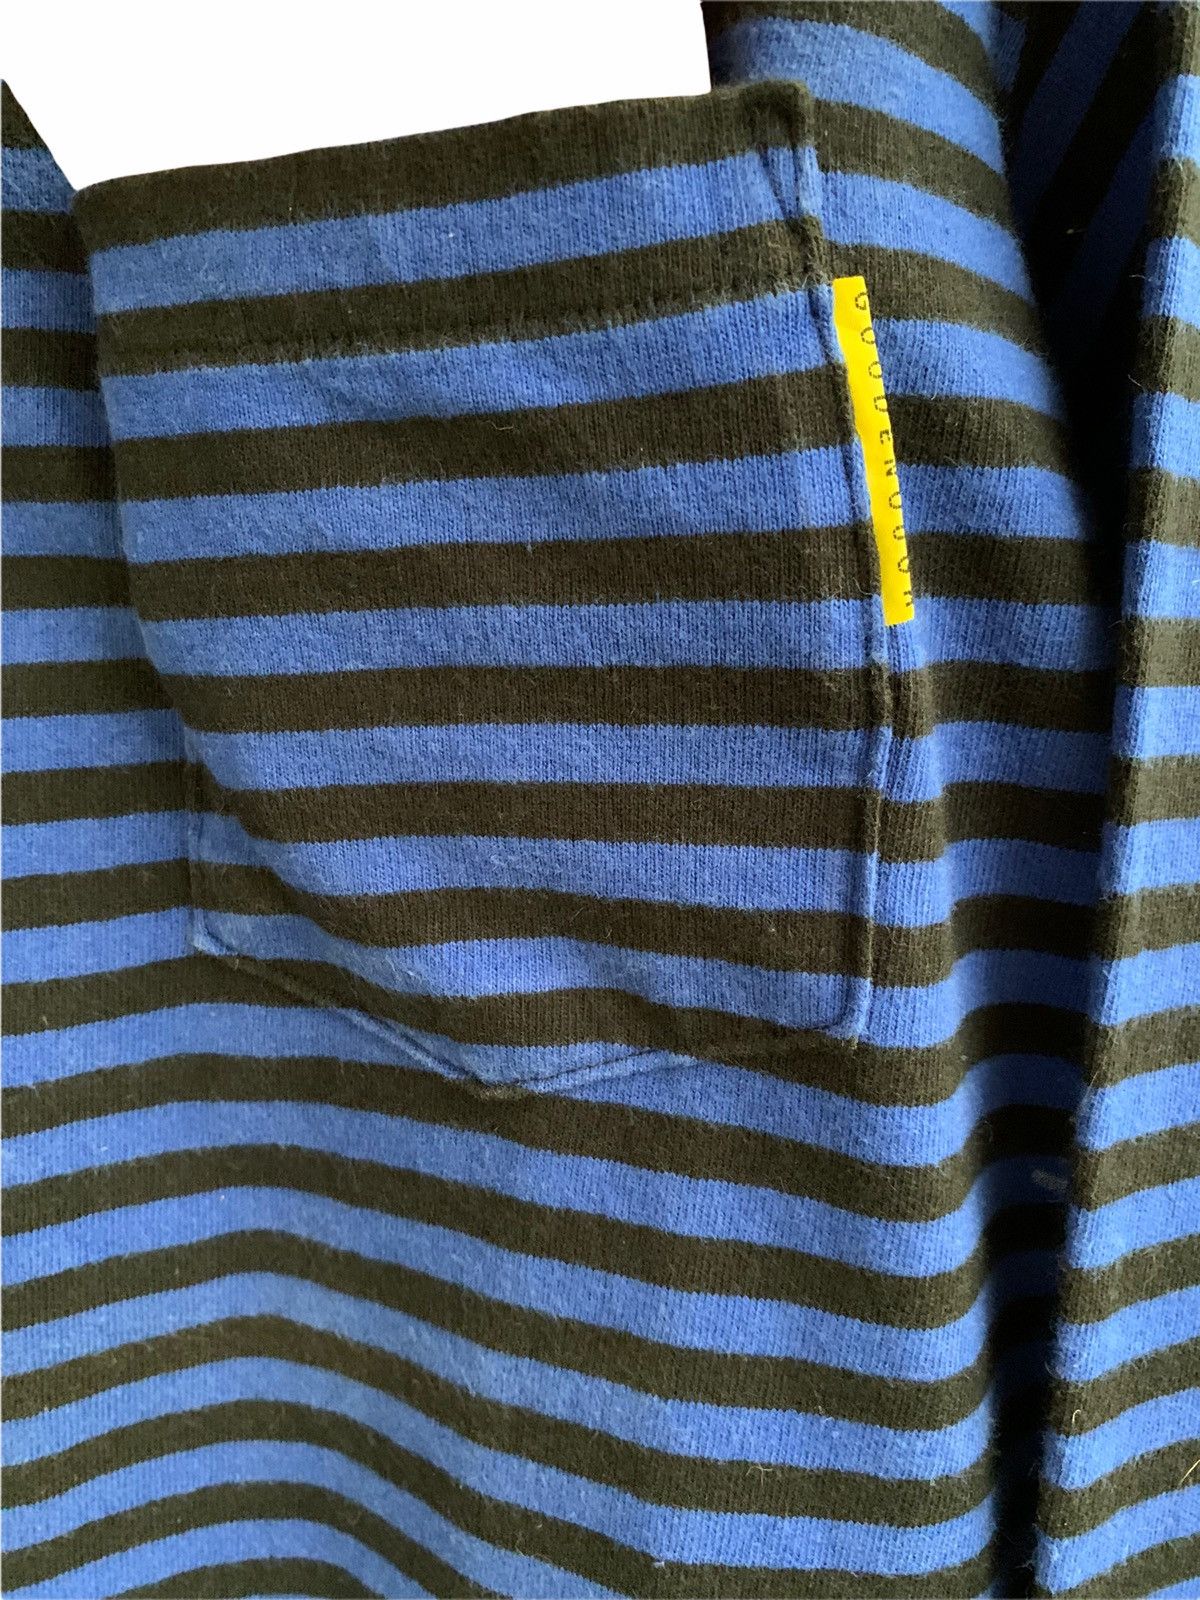 Goodenough Vinateg Good Enough Blue Striped Long Sleeve T-shirts Size US L / EU 52-54 / 3 - 8 Thumbnail